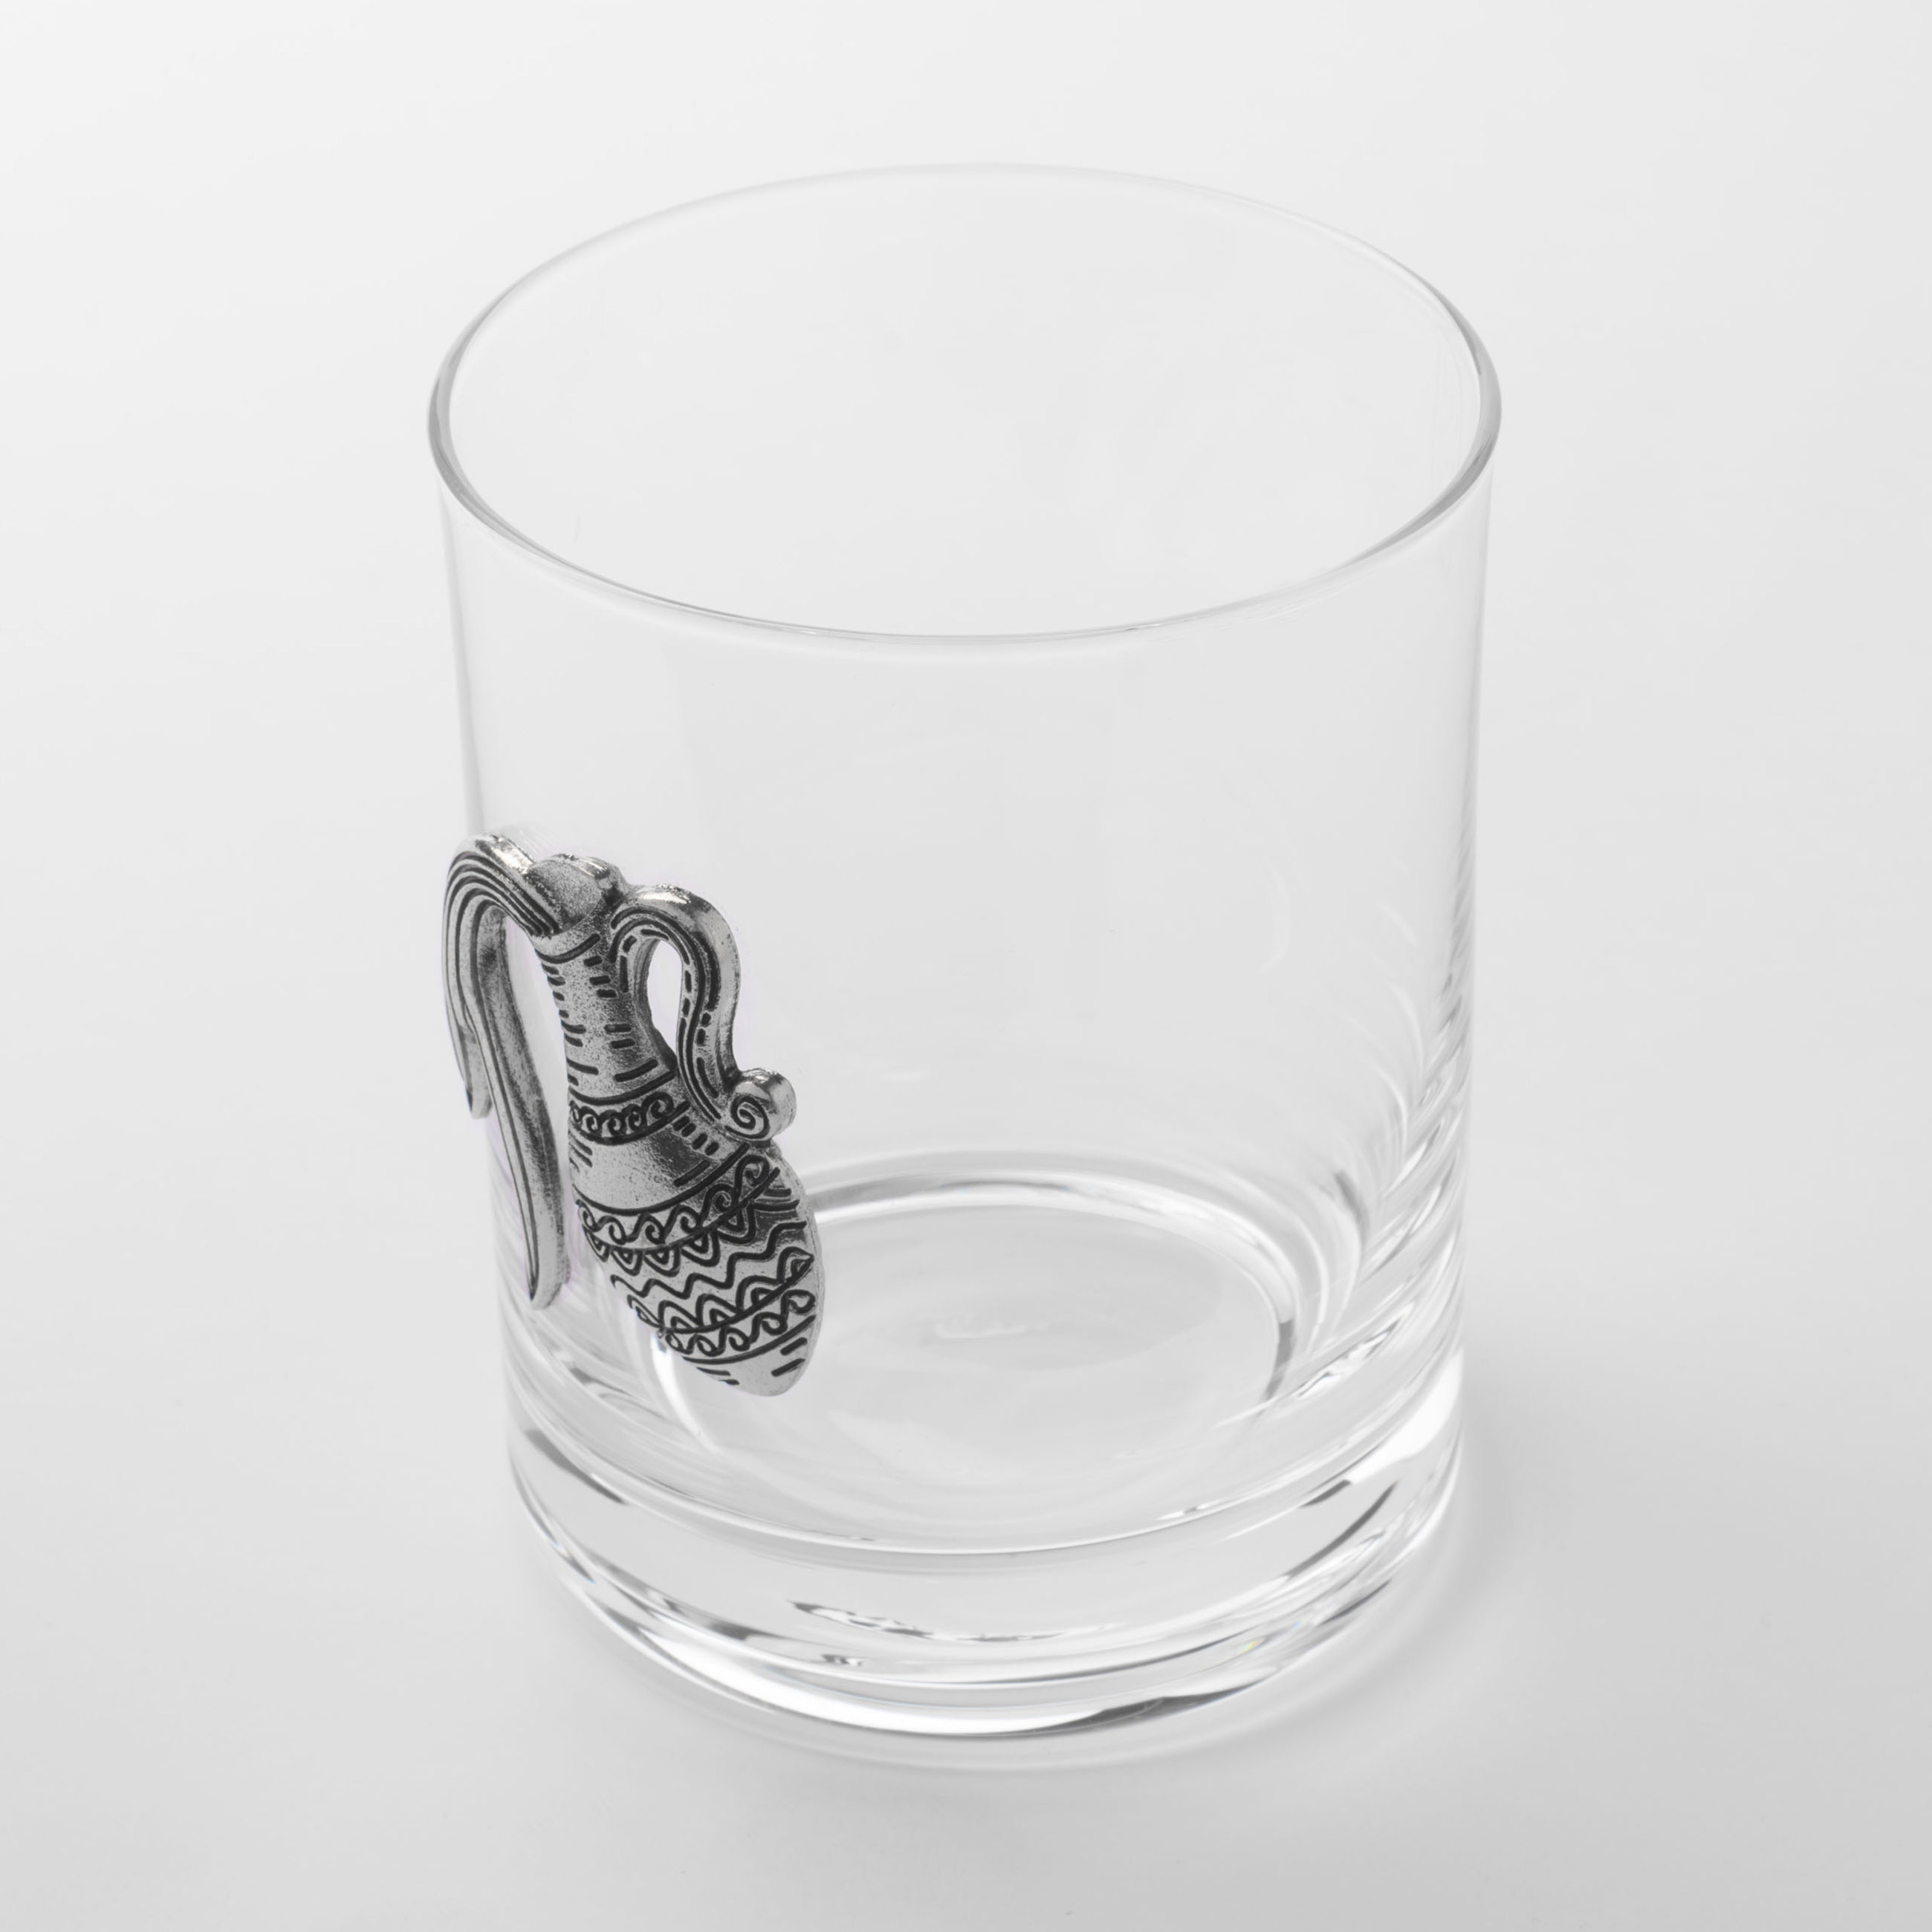 Стакан для виски, 340 мл, стекло/металл, серебристый, Водолей, Zodiac изображение № 2